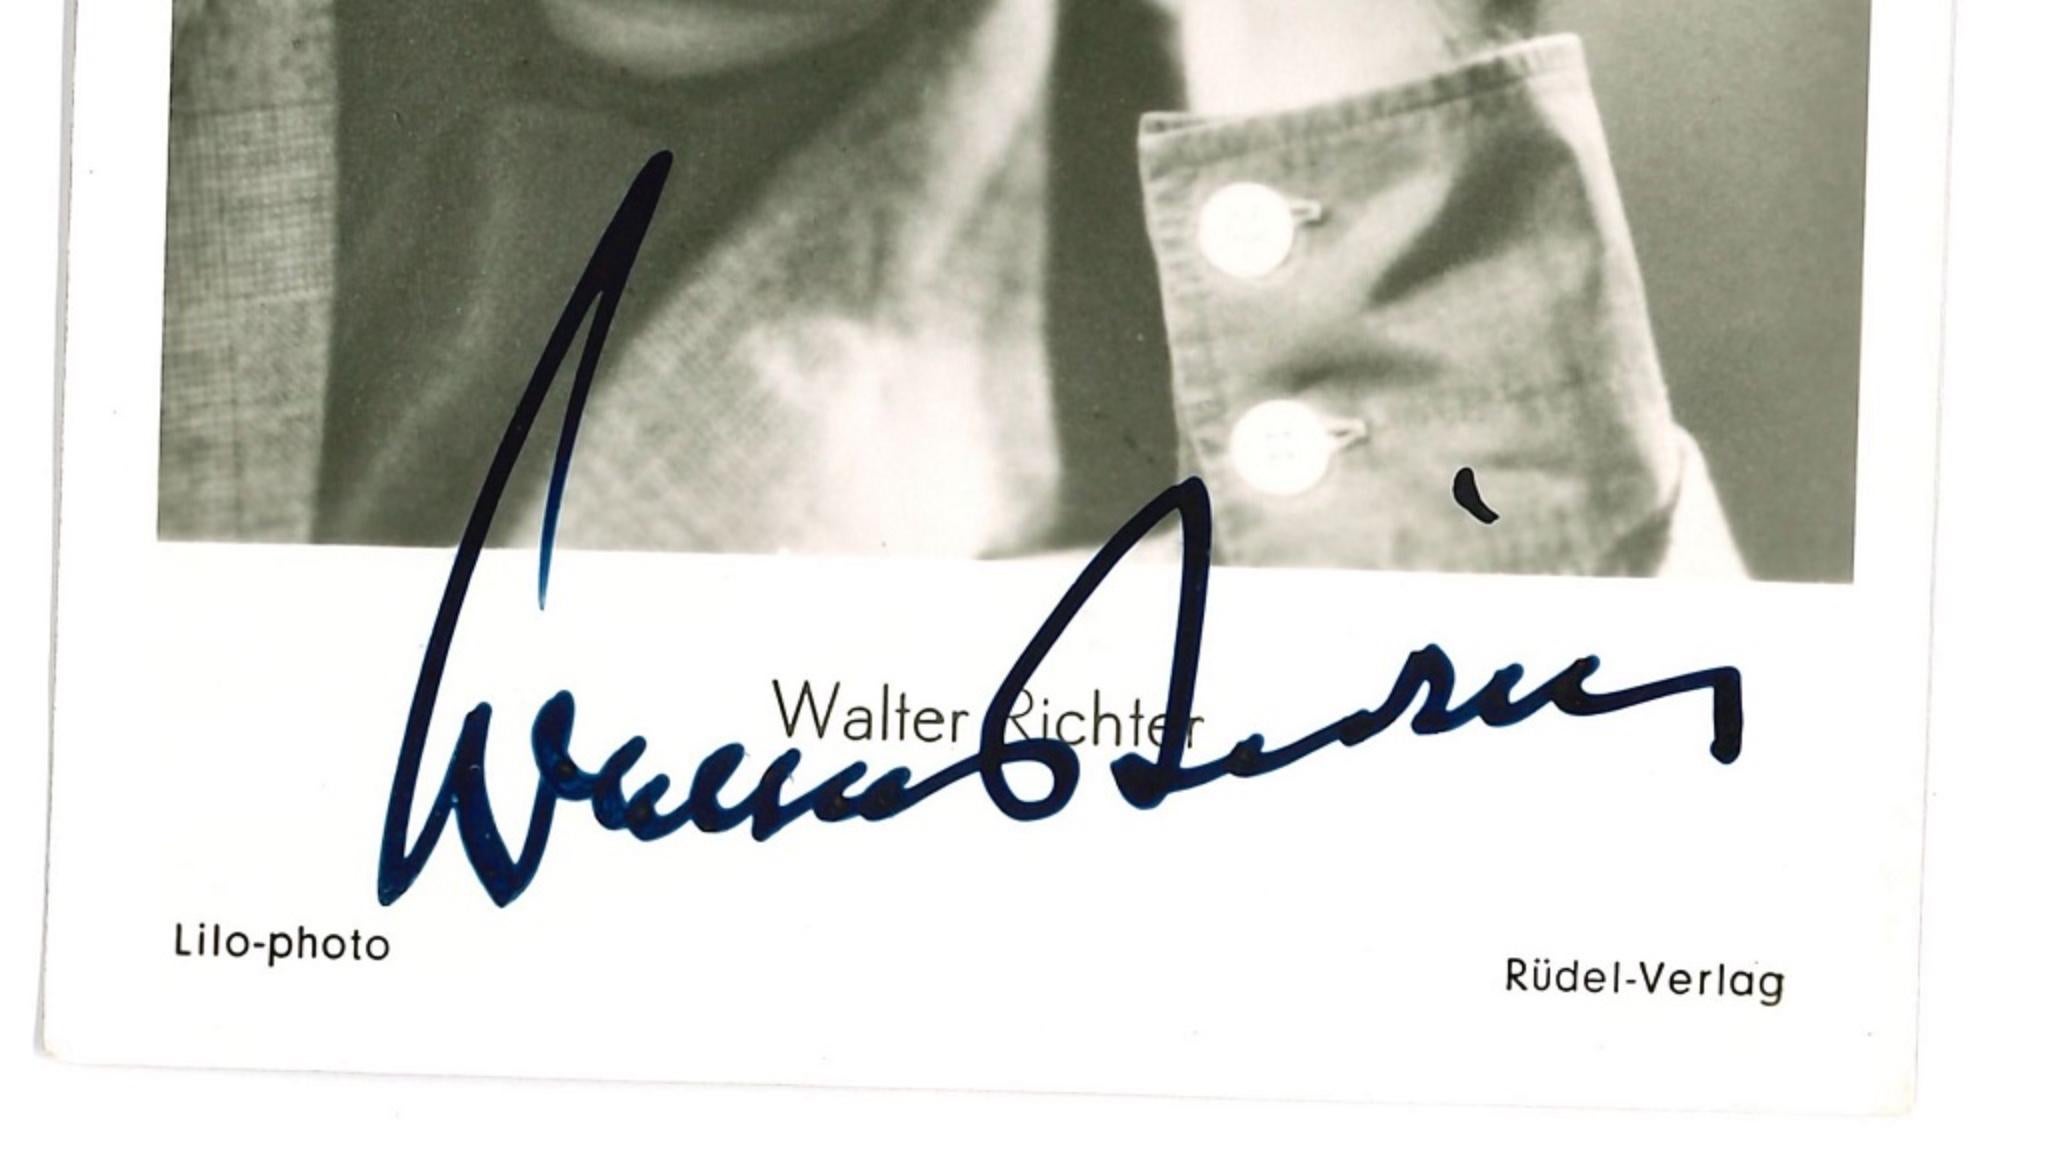 Autographisches Porträt von Walter Richter - Vintage b/w Postcard - 1960er Jahre – Photograph von Unknown